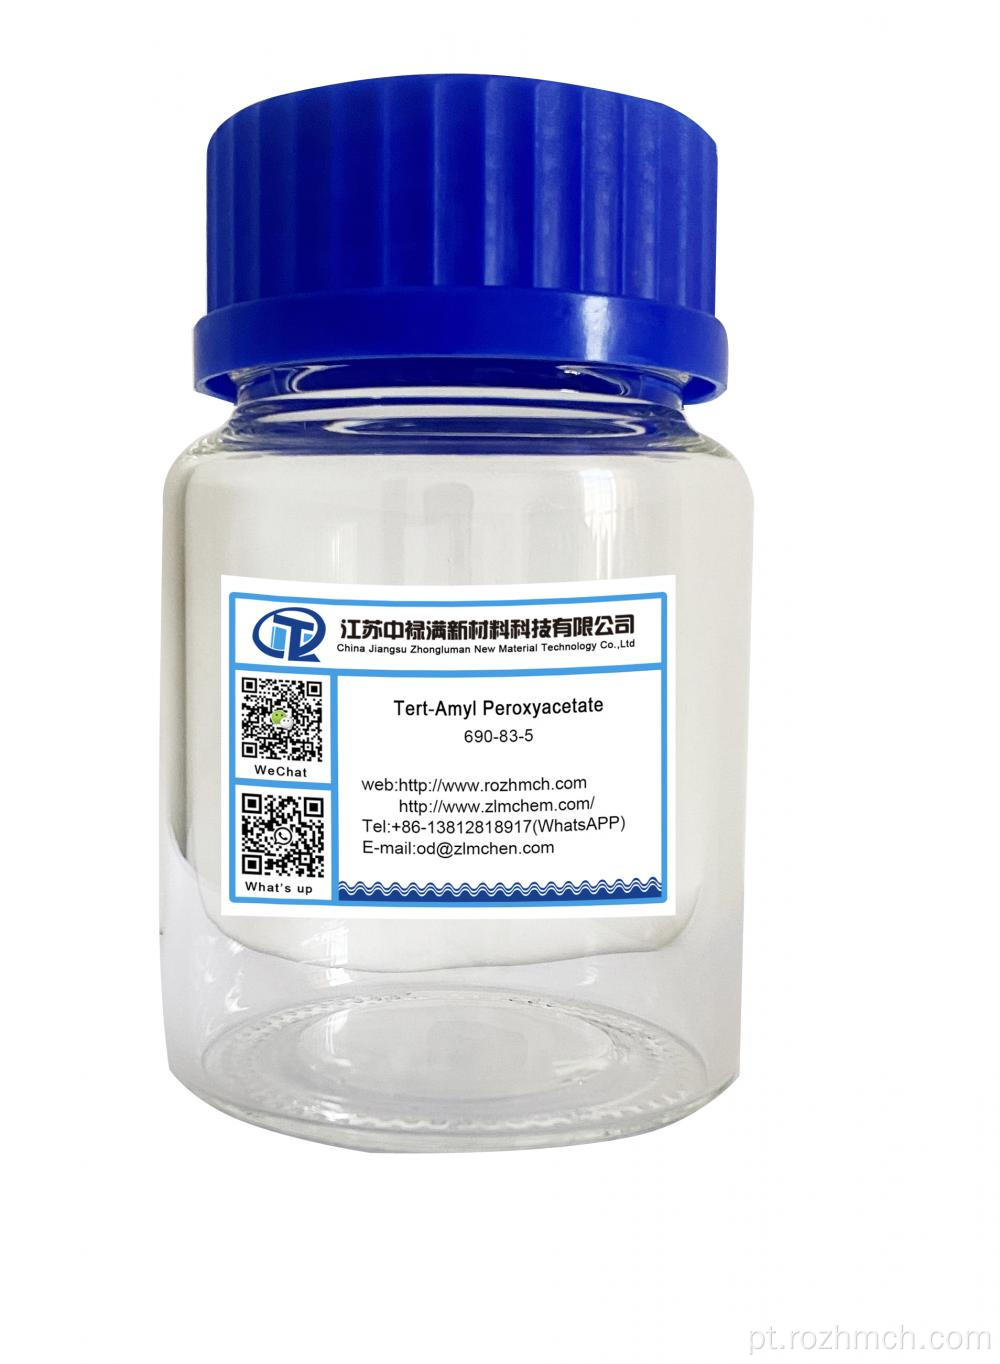 Tert-amil peroxiacetato CAS 690-83-5